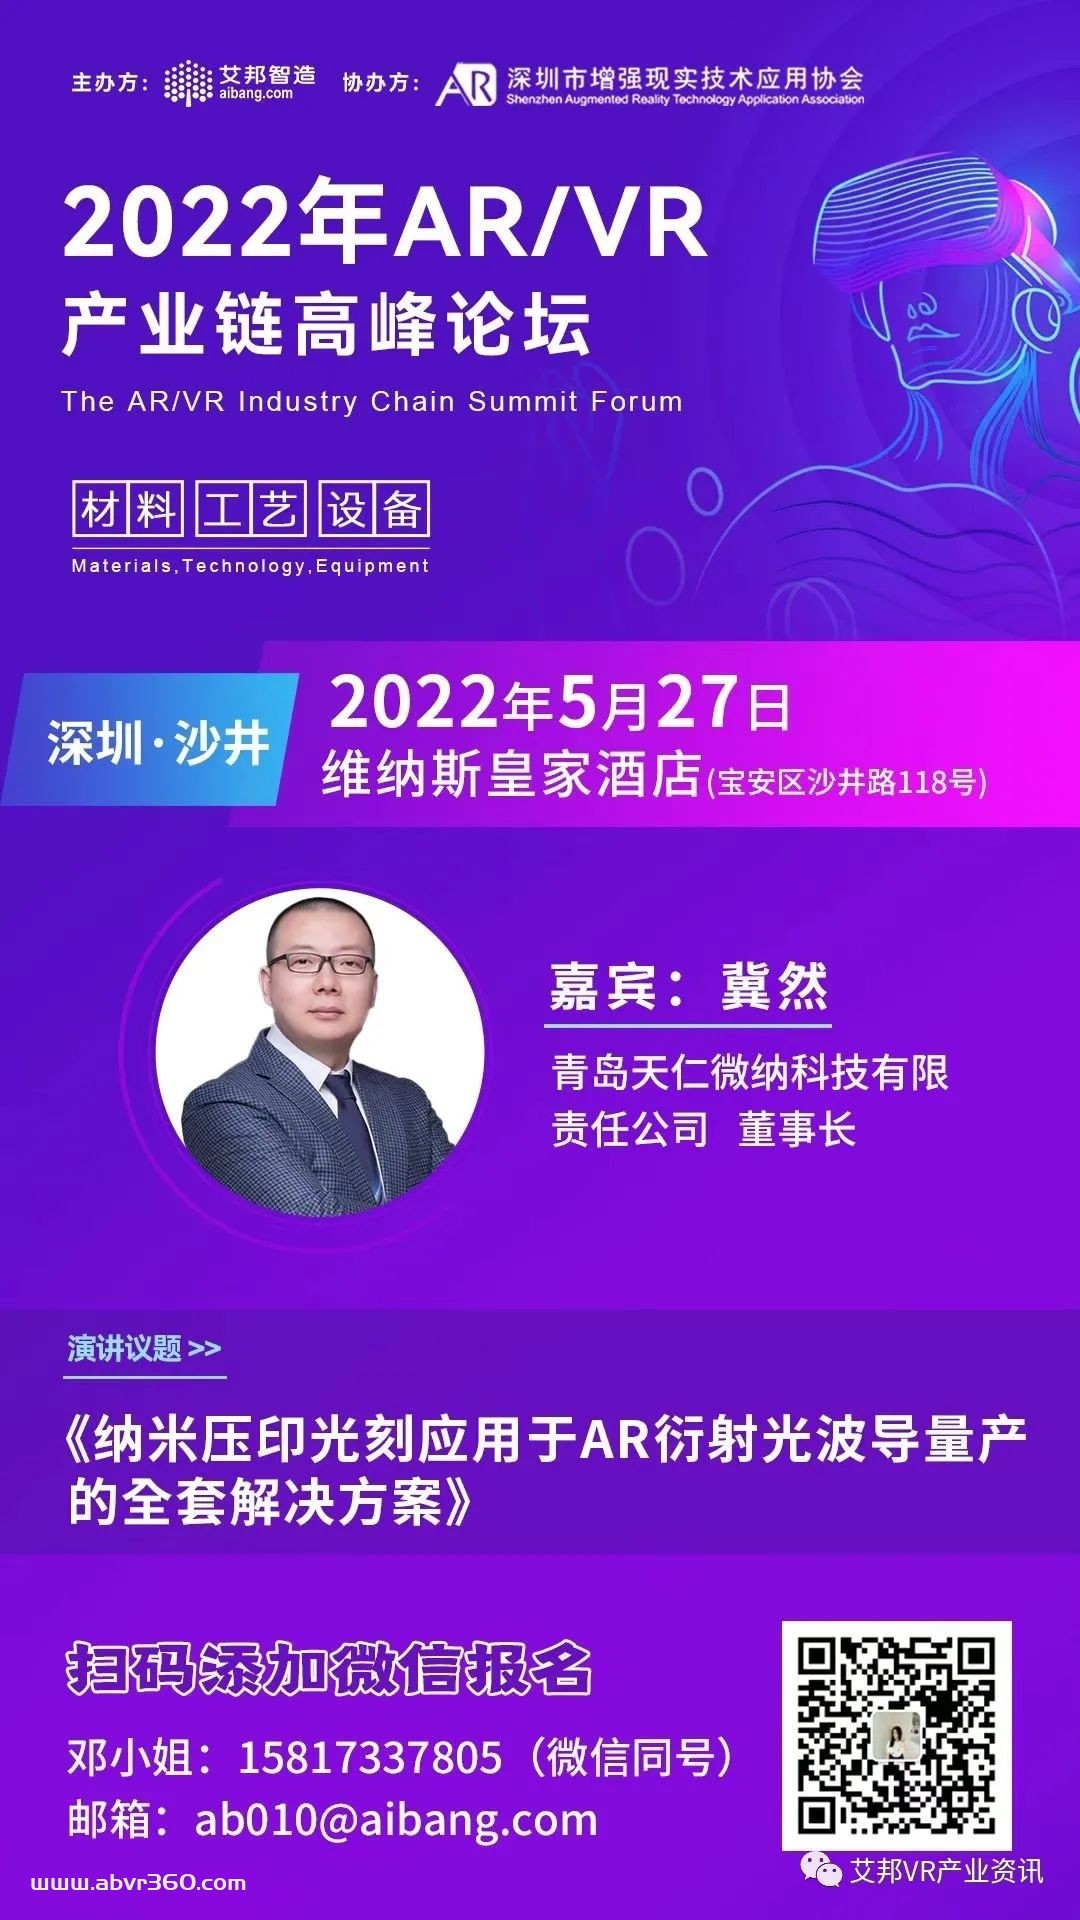 天仁微纳将参与5月27日深圳AR/VR高峰论坛